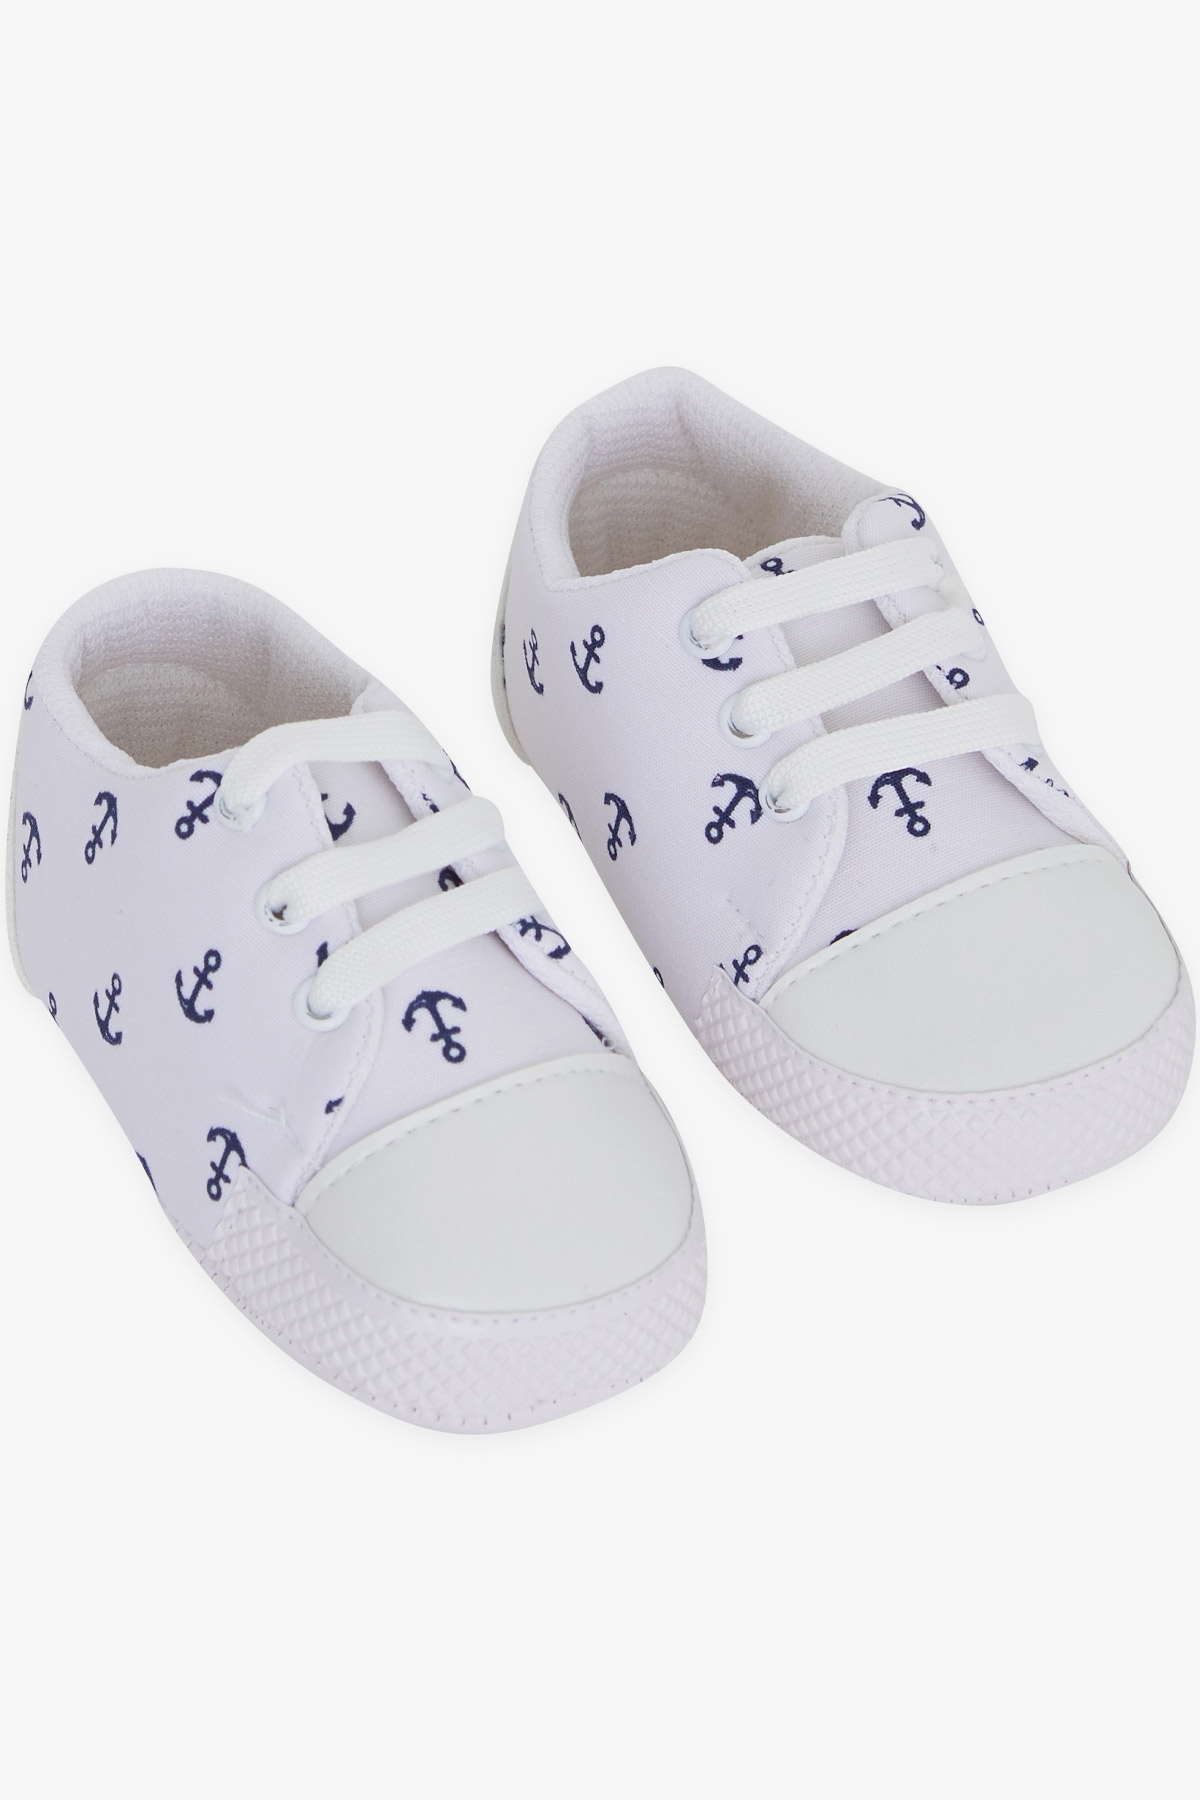 Erkek Bebek Patik Ayakkabı Çapa Desenli Beyaz 18 Numara-19 Numara - Tatlı Bebek  Ayakkabıları | Breeze